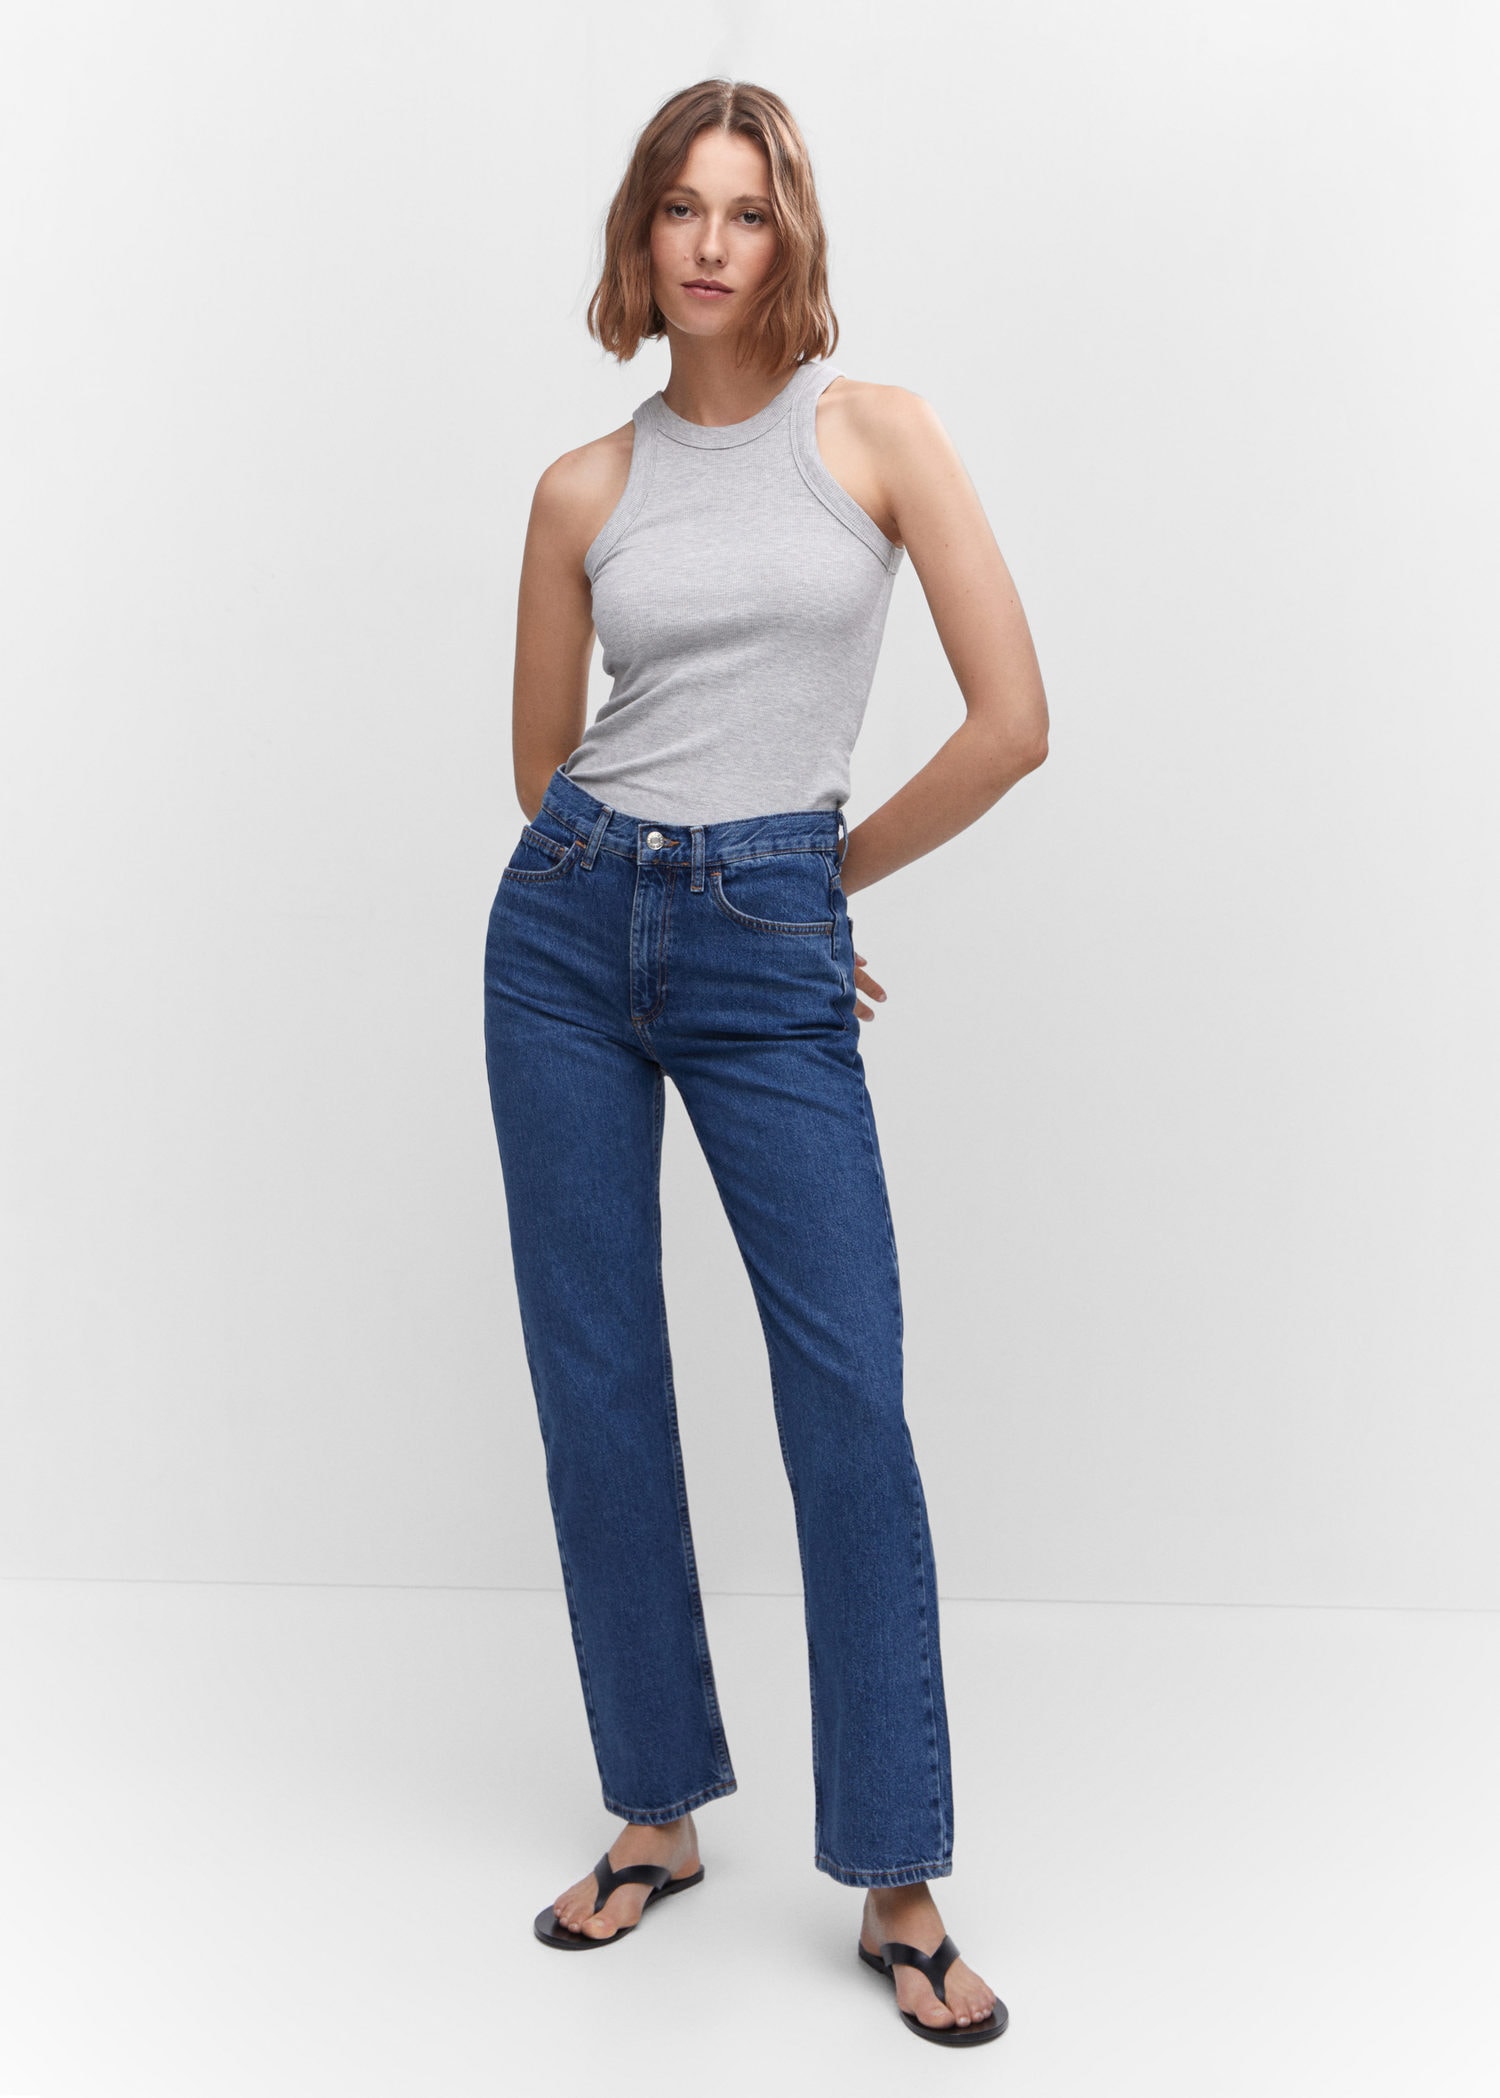 Jeans rectos de mujer - Pantalones vaqueros rectos para mujer, Nueva  colección